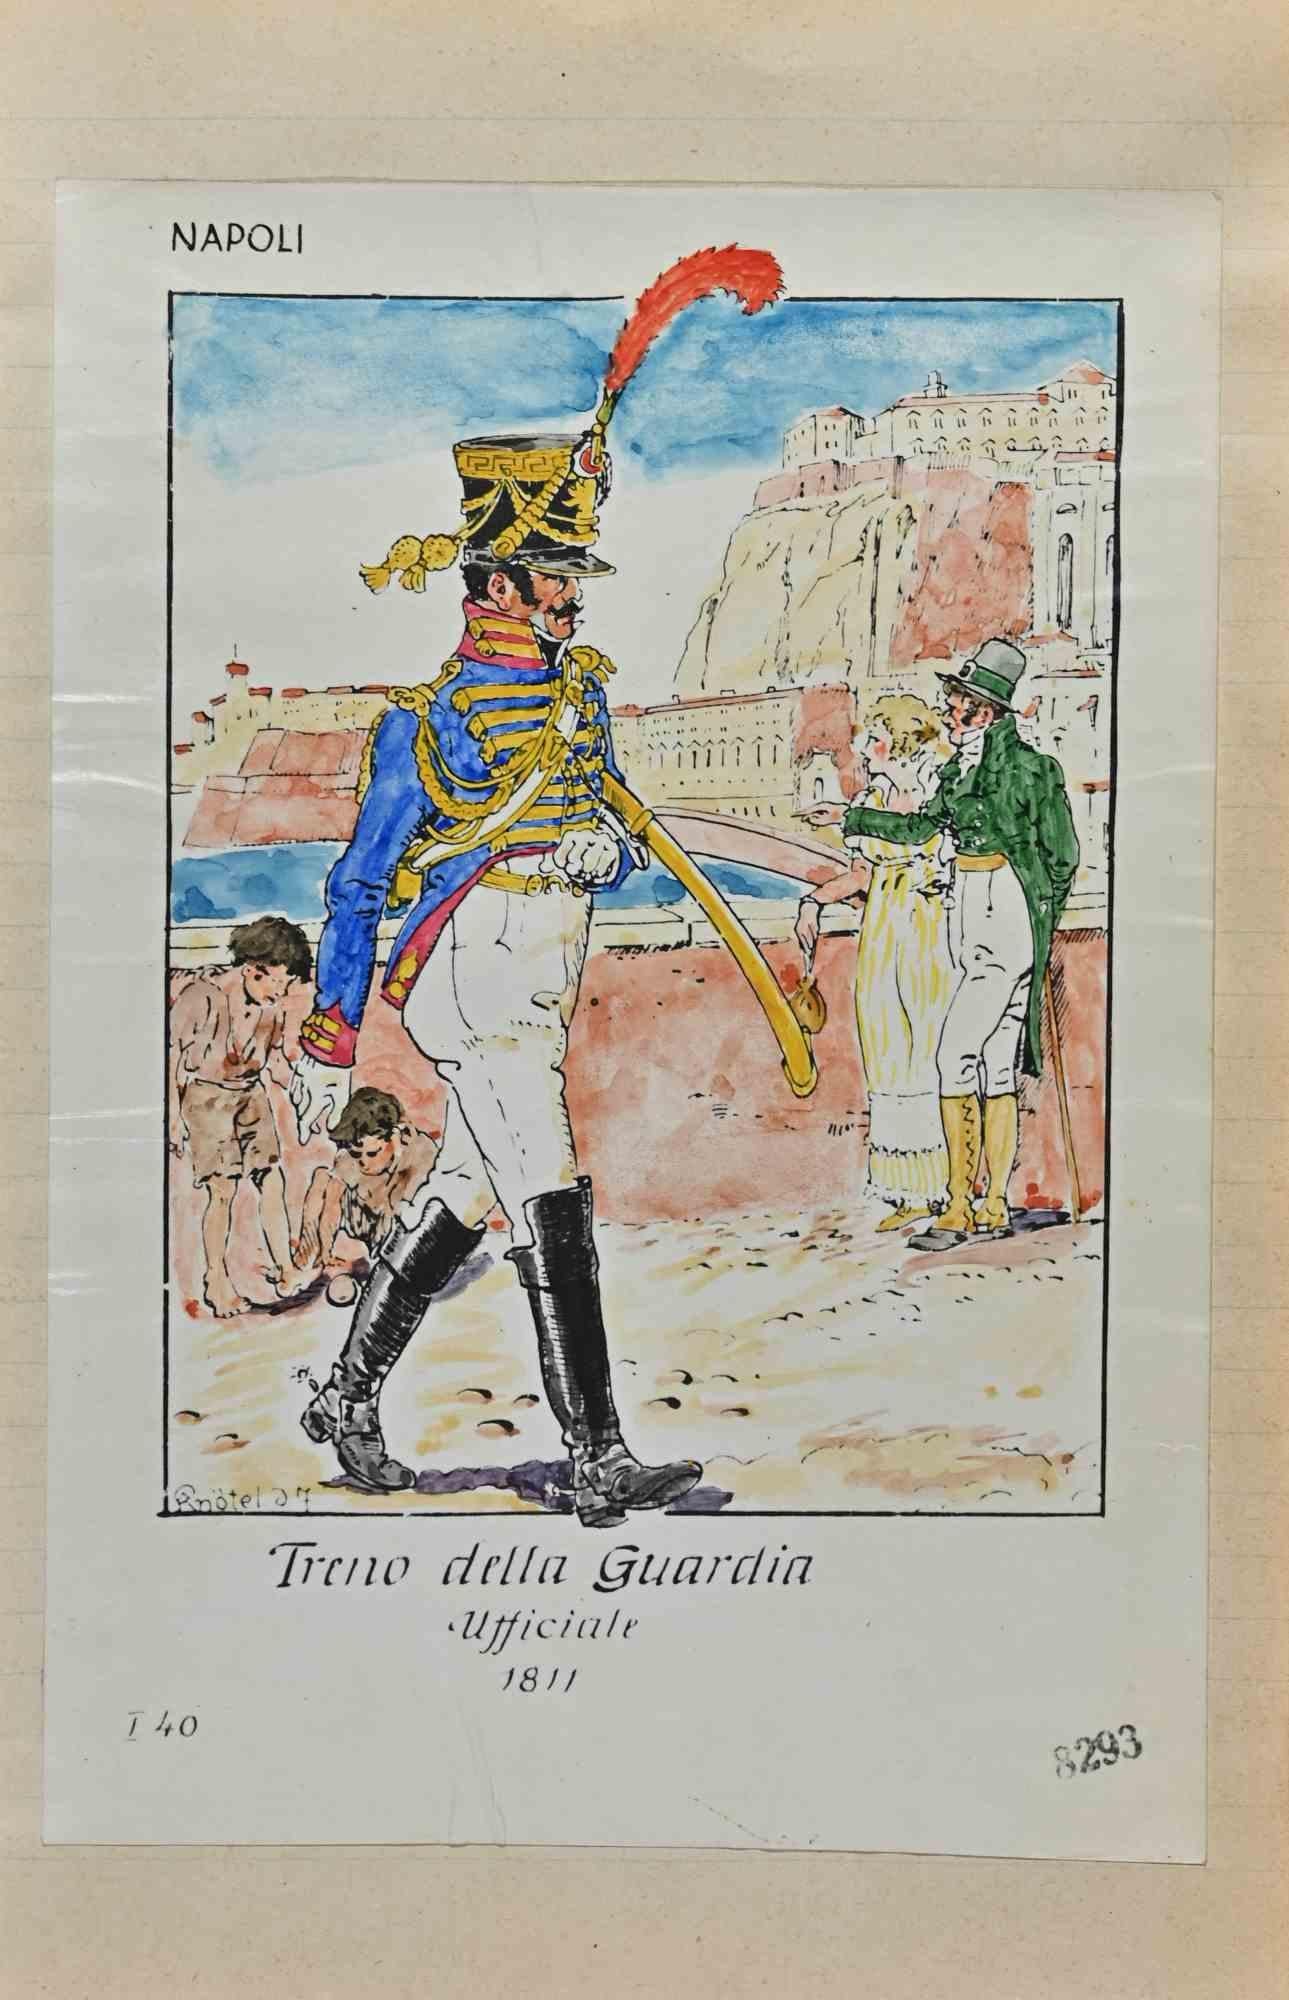 Treno della Guardia ist eine Originalzeichnung in Tusche und Aquarell von Herbert Knotel aus den 1930/40er Jahren.

Guter Zustand mit Ausnahme des Alters.

Das Kunstwerk wird durch starke Linien in ausgewogenen Verhältnissen dargestellt.

Herbert